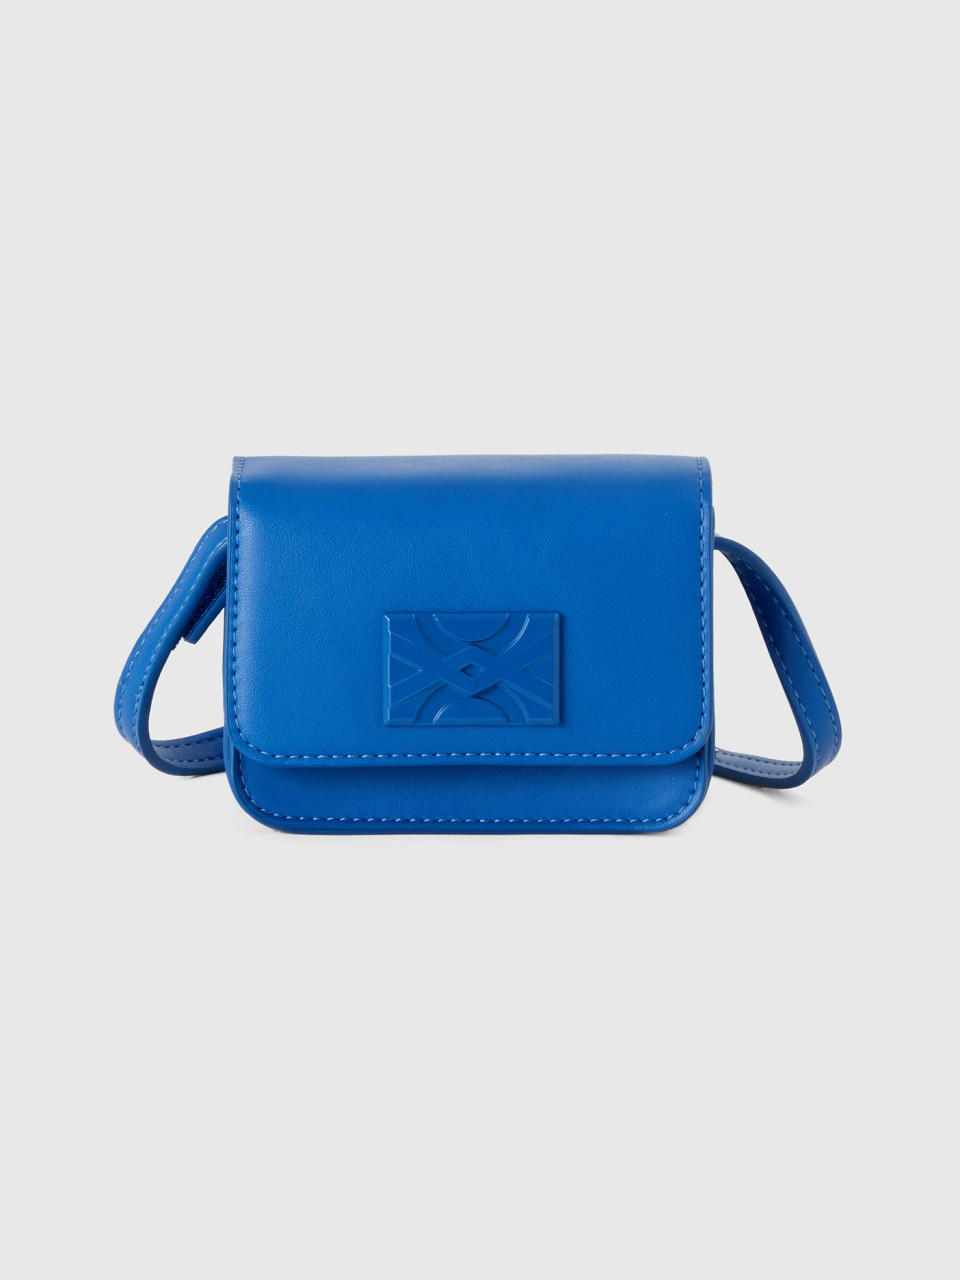 Benetton, Be Bag Mini In Bluette, Verkehrsblau, female